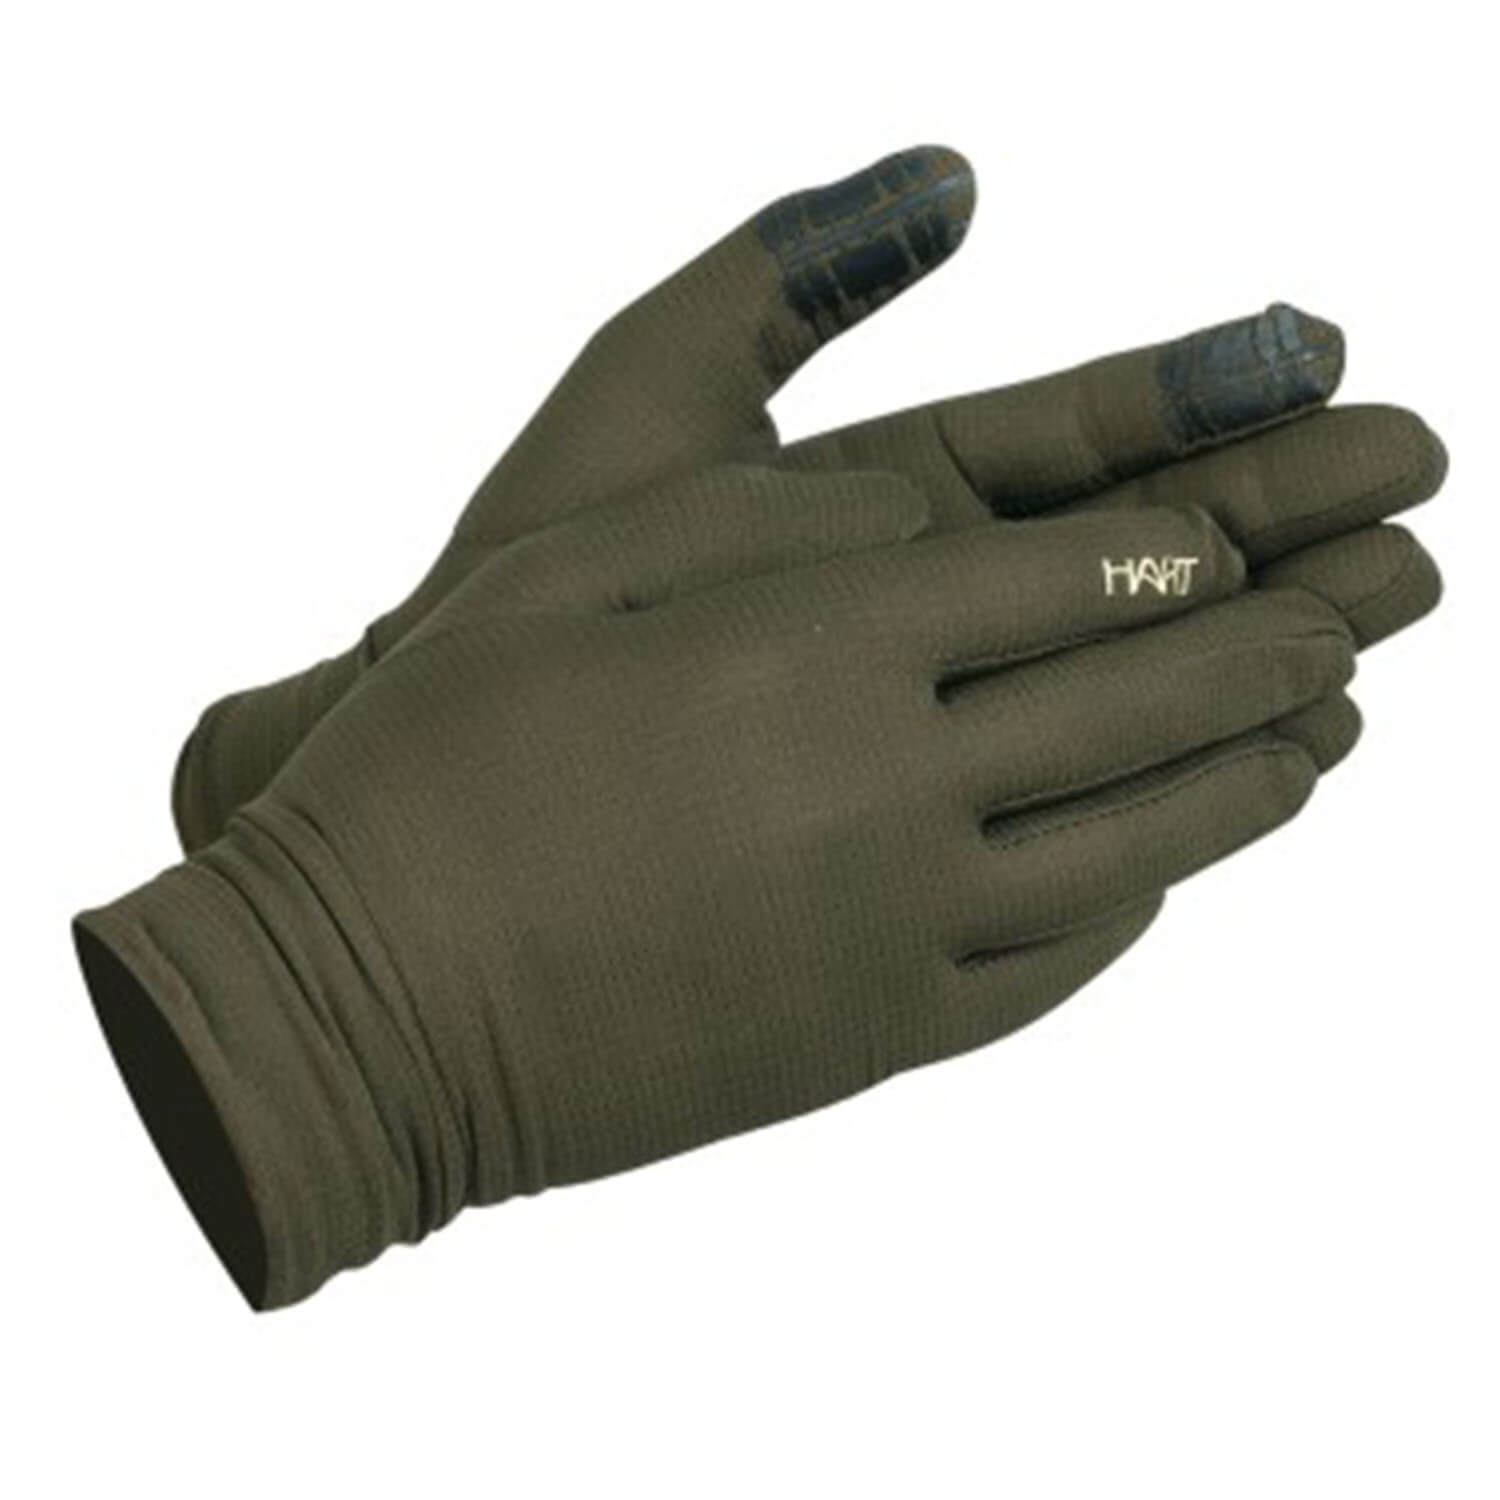  Hart Gloves Ural-GC Cover Ultralight (Green) - Hunting Gloves